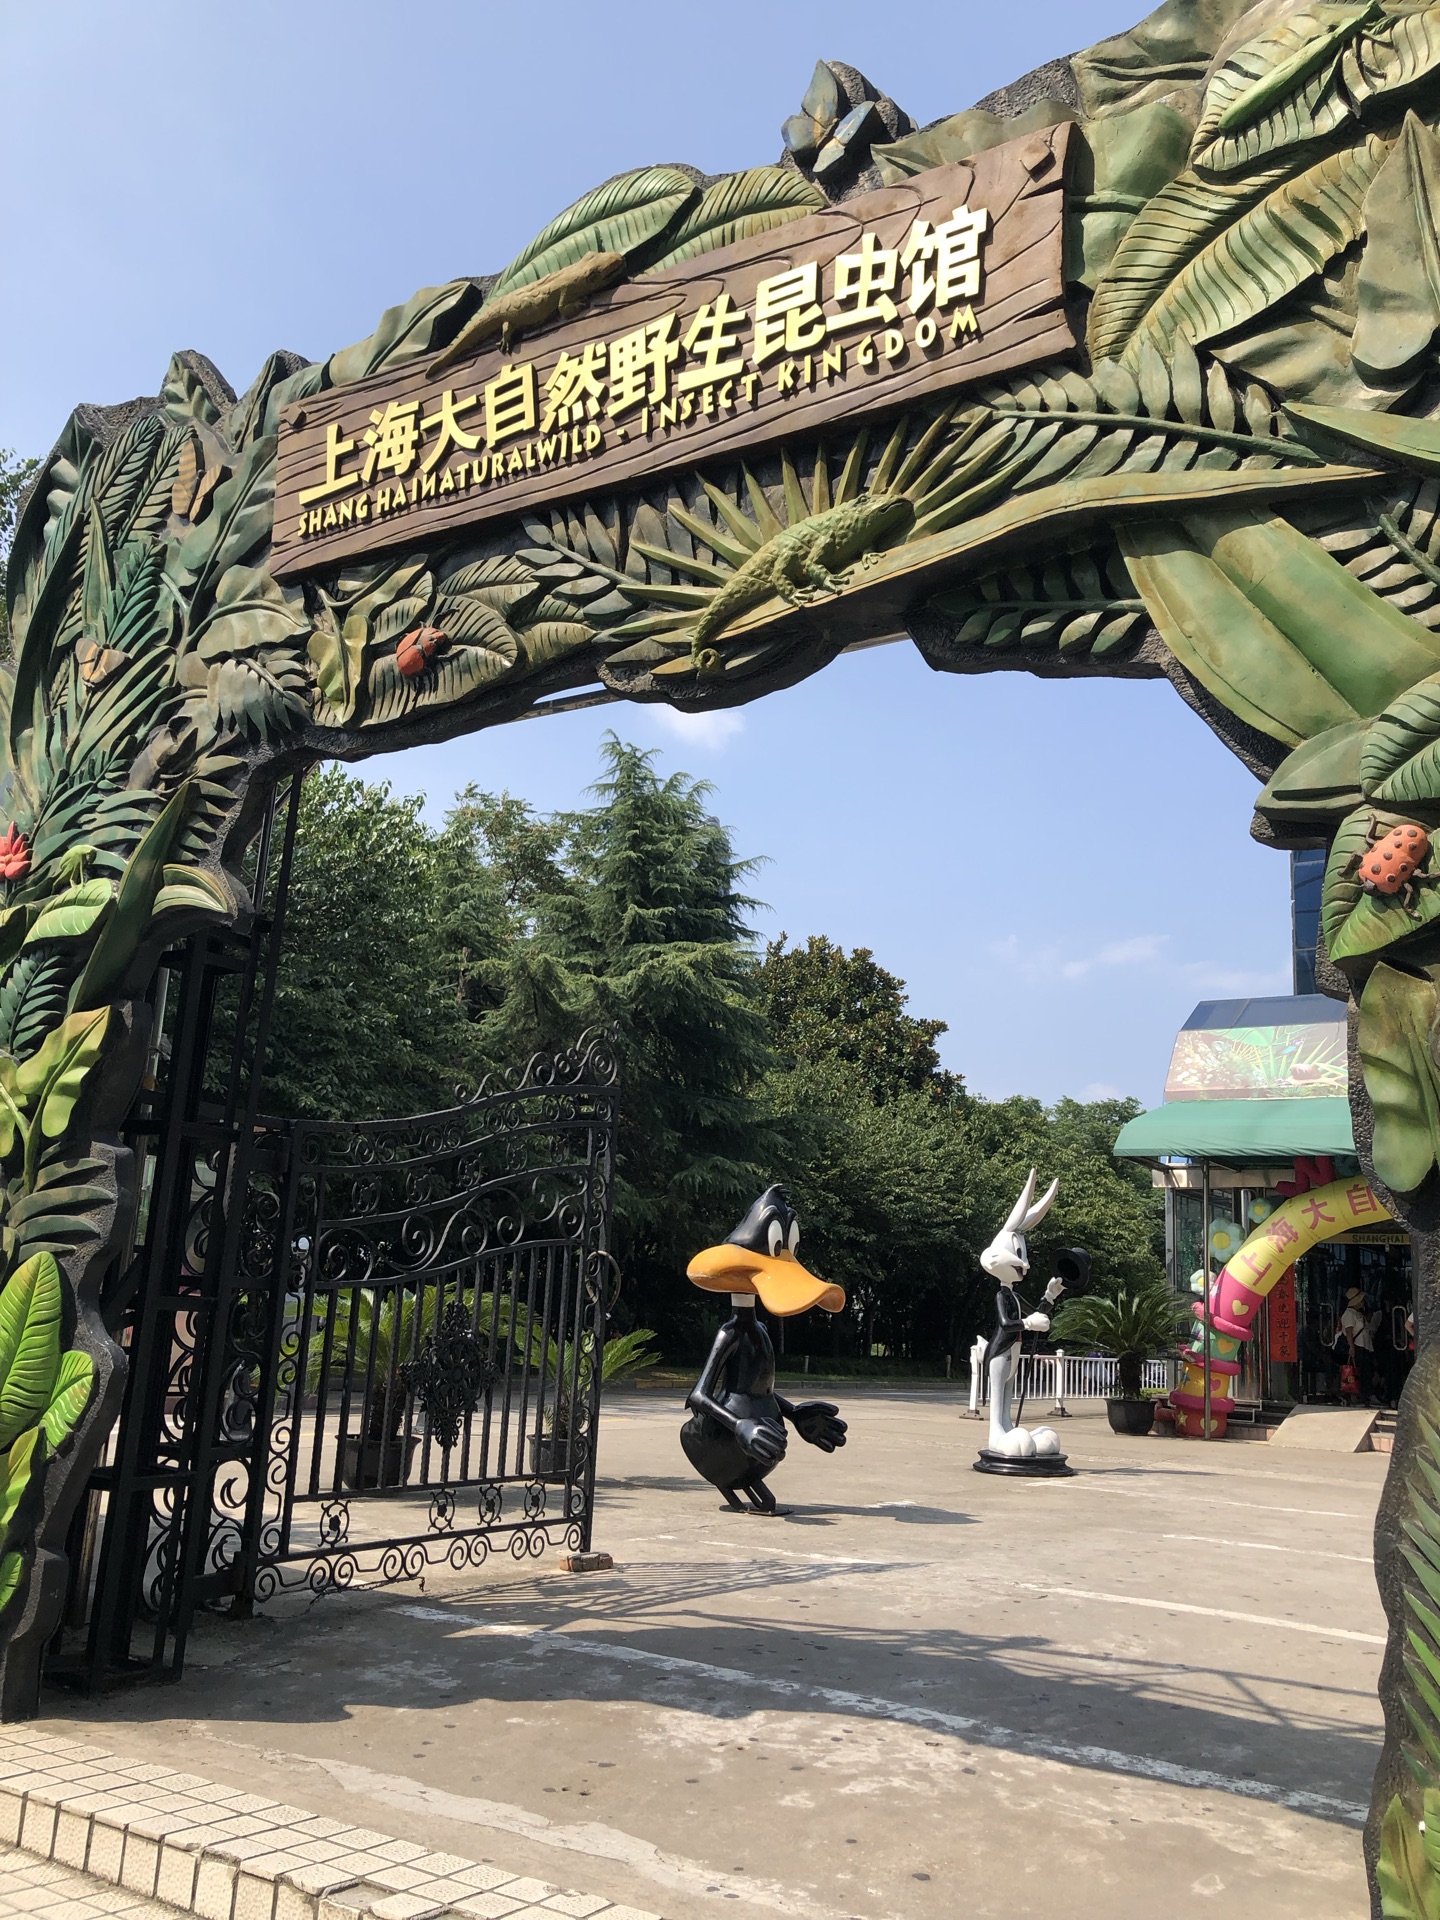 上海上海大自然野生昆虫馆好玩吗,上海上海大自然野生昆虫馆景点怎么